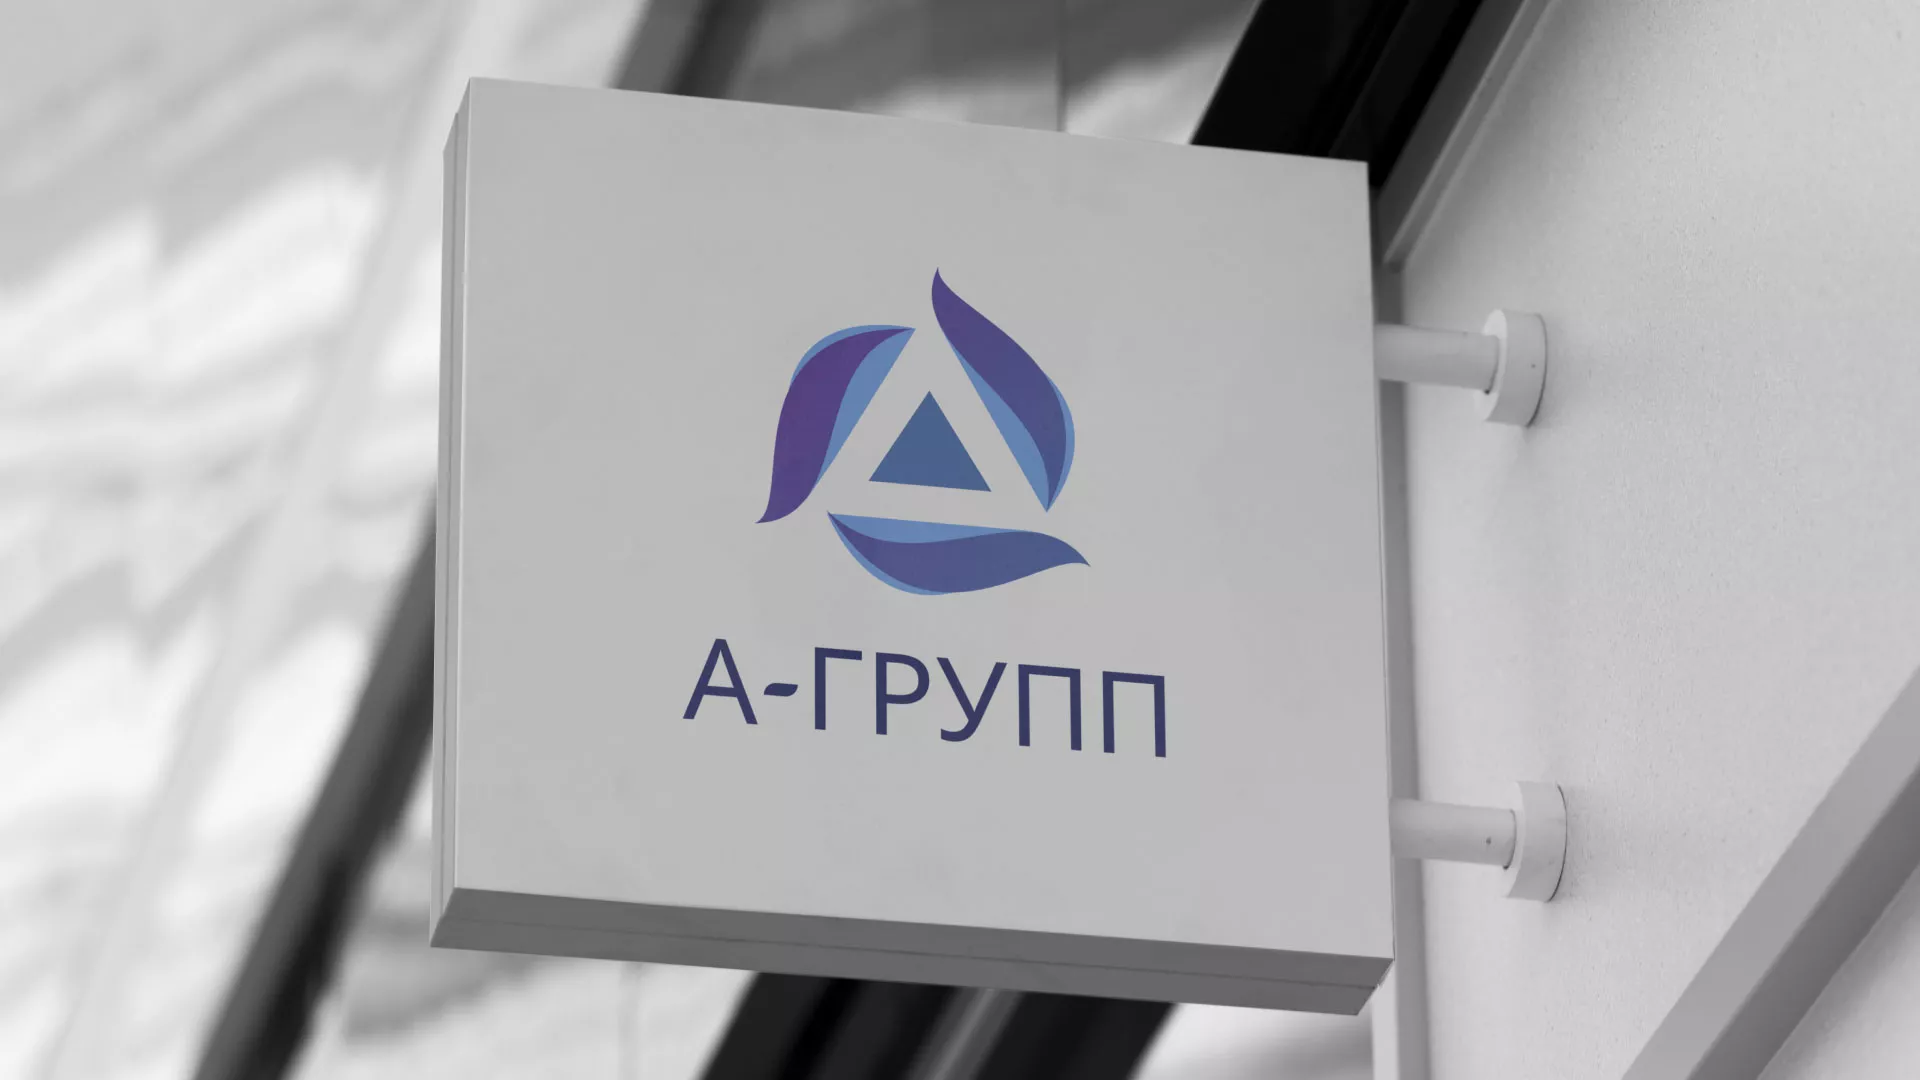 Создание логотипа компании «А-ГРУПП» в Соколе